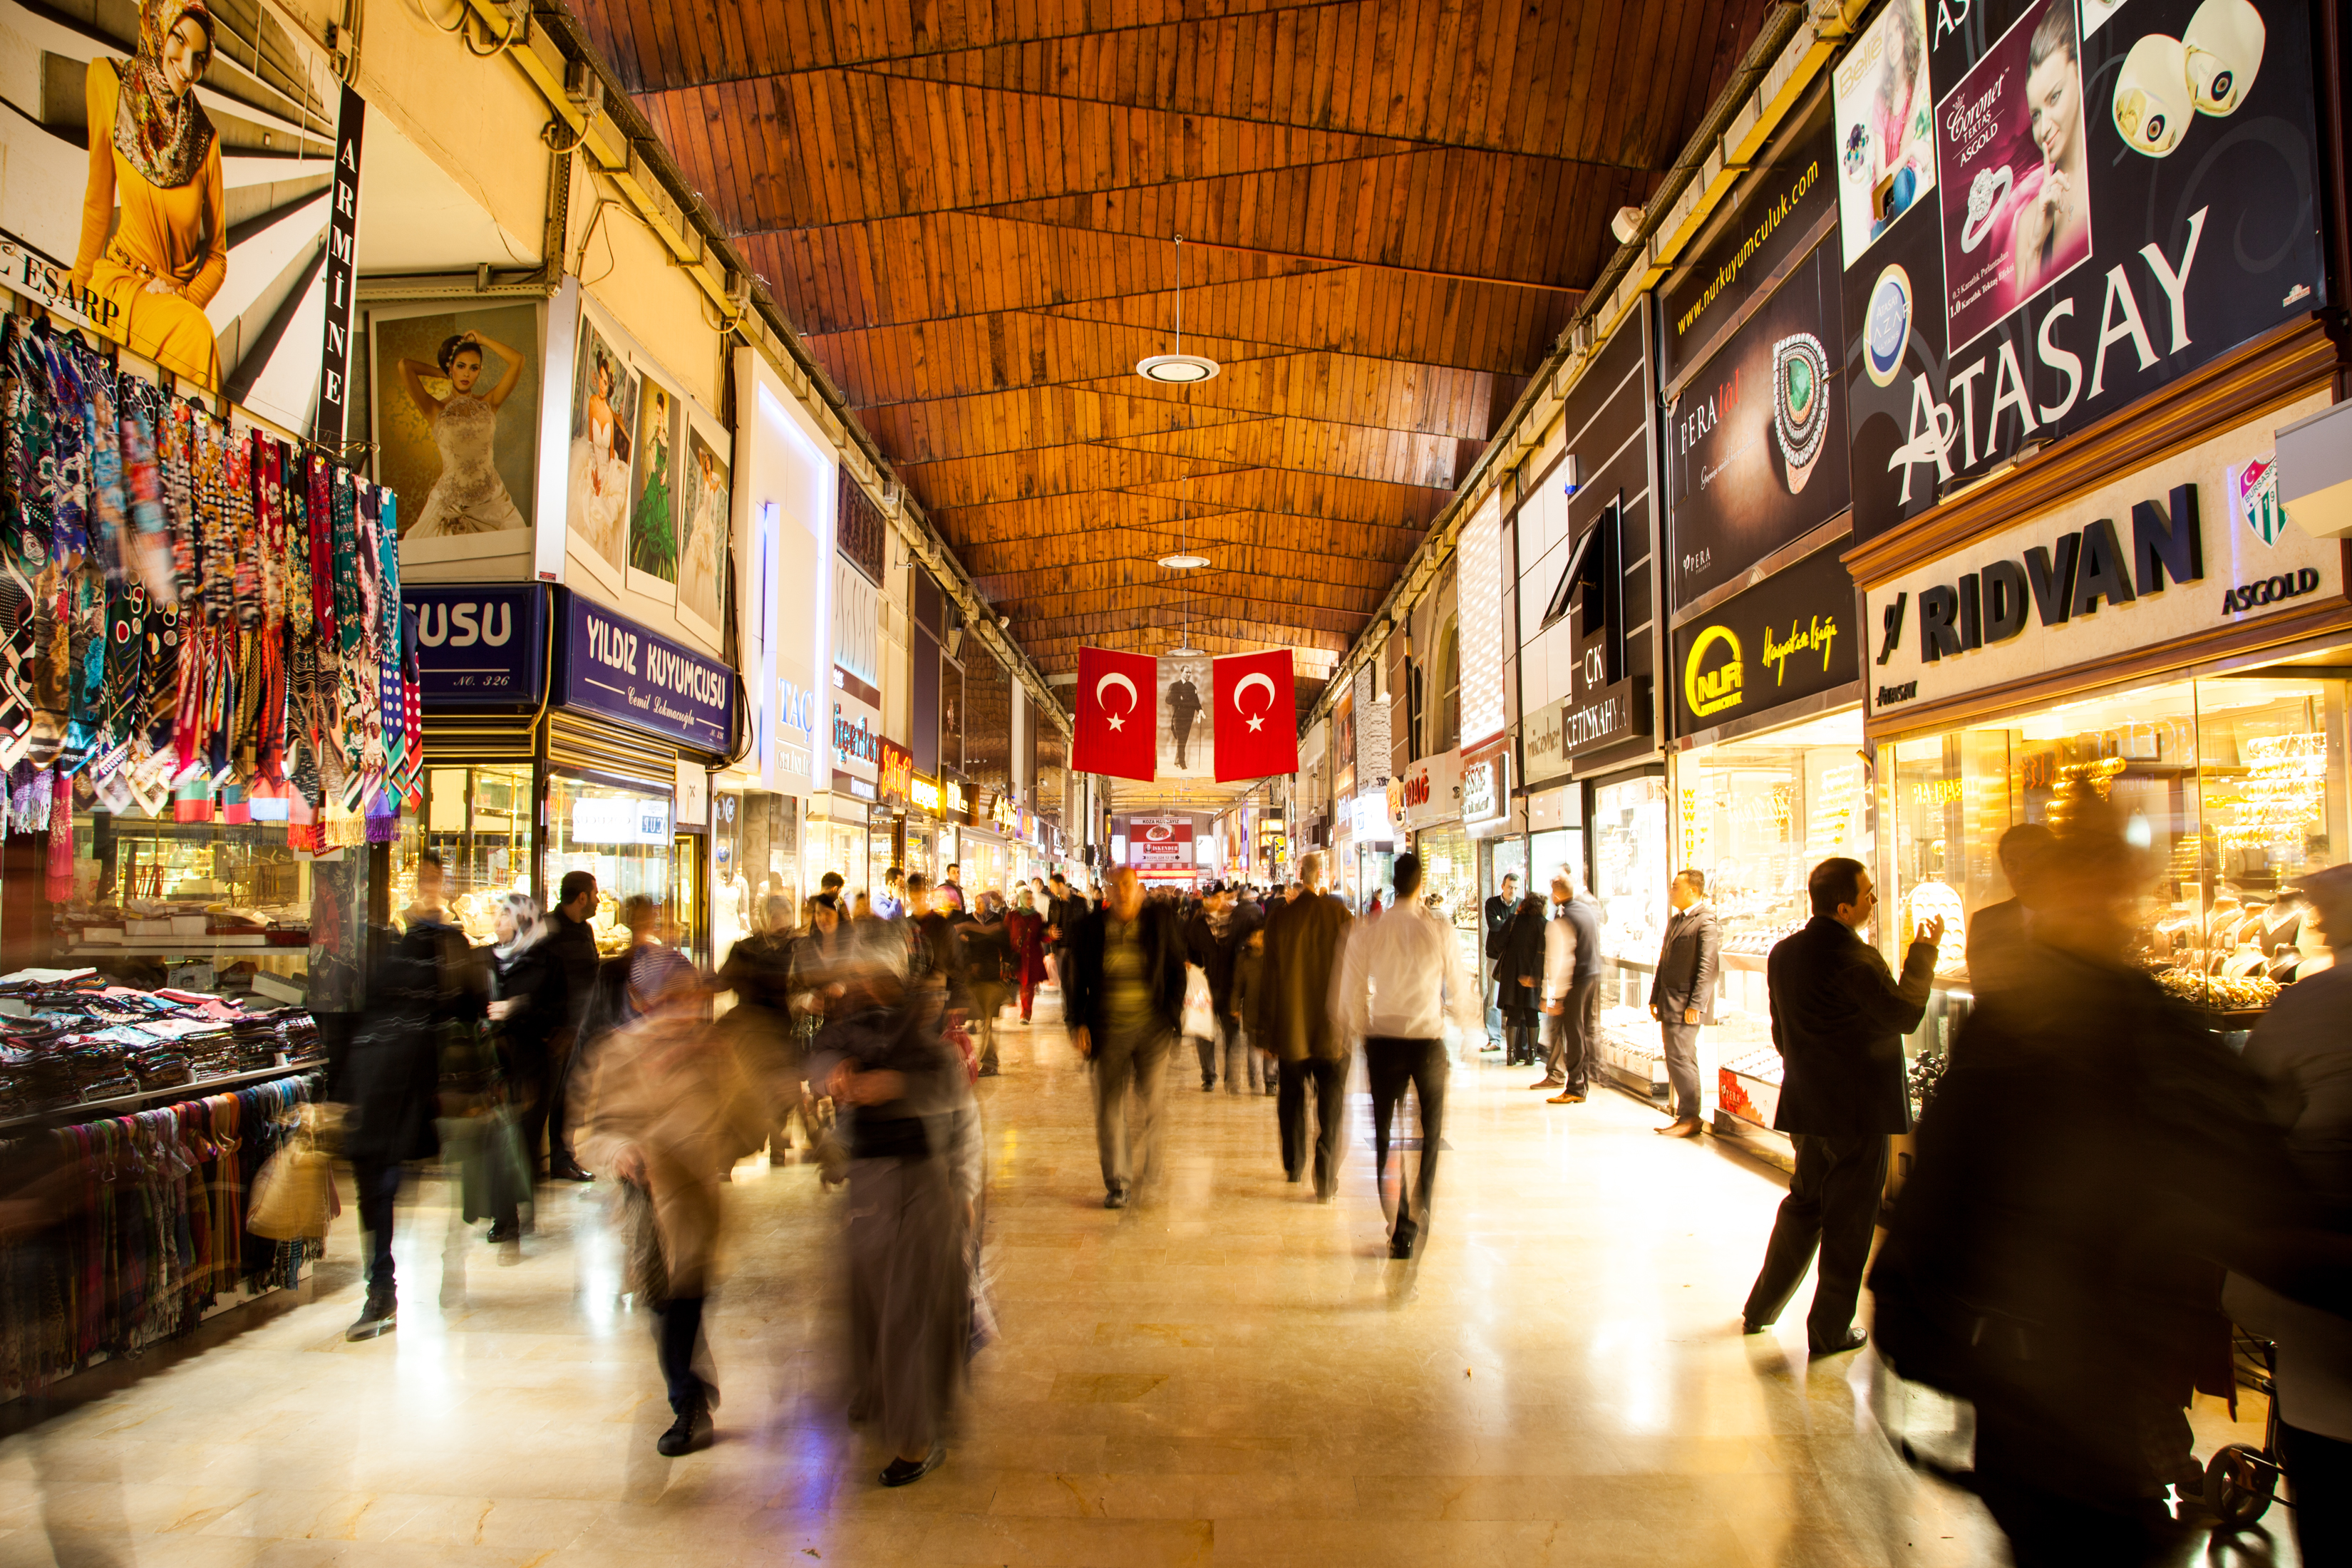 3 600 магазина, до 300 хиляди посетители на ден, милиони евро дневен оборот – всичко това и много повече е най-известният базар в Истанбул